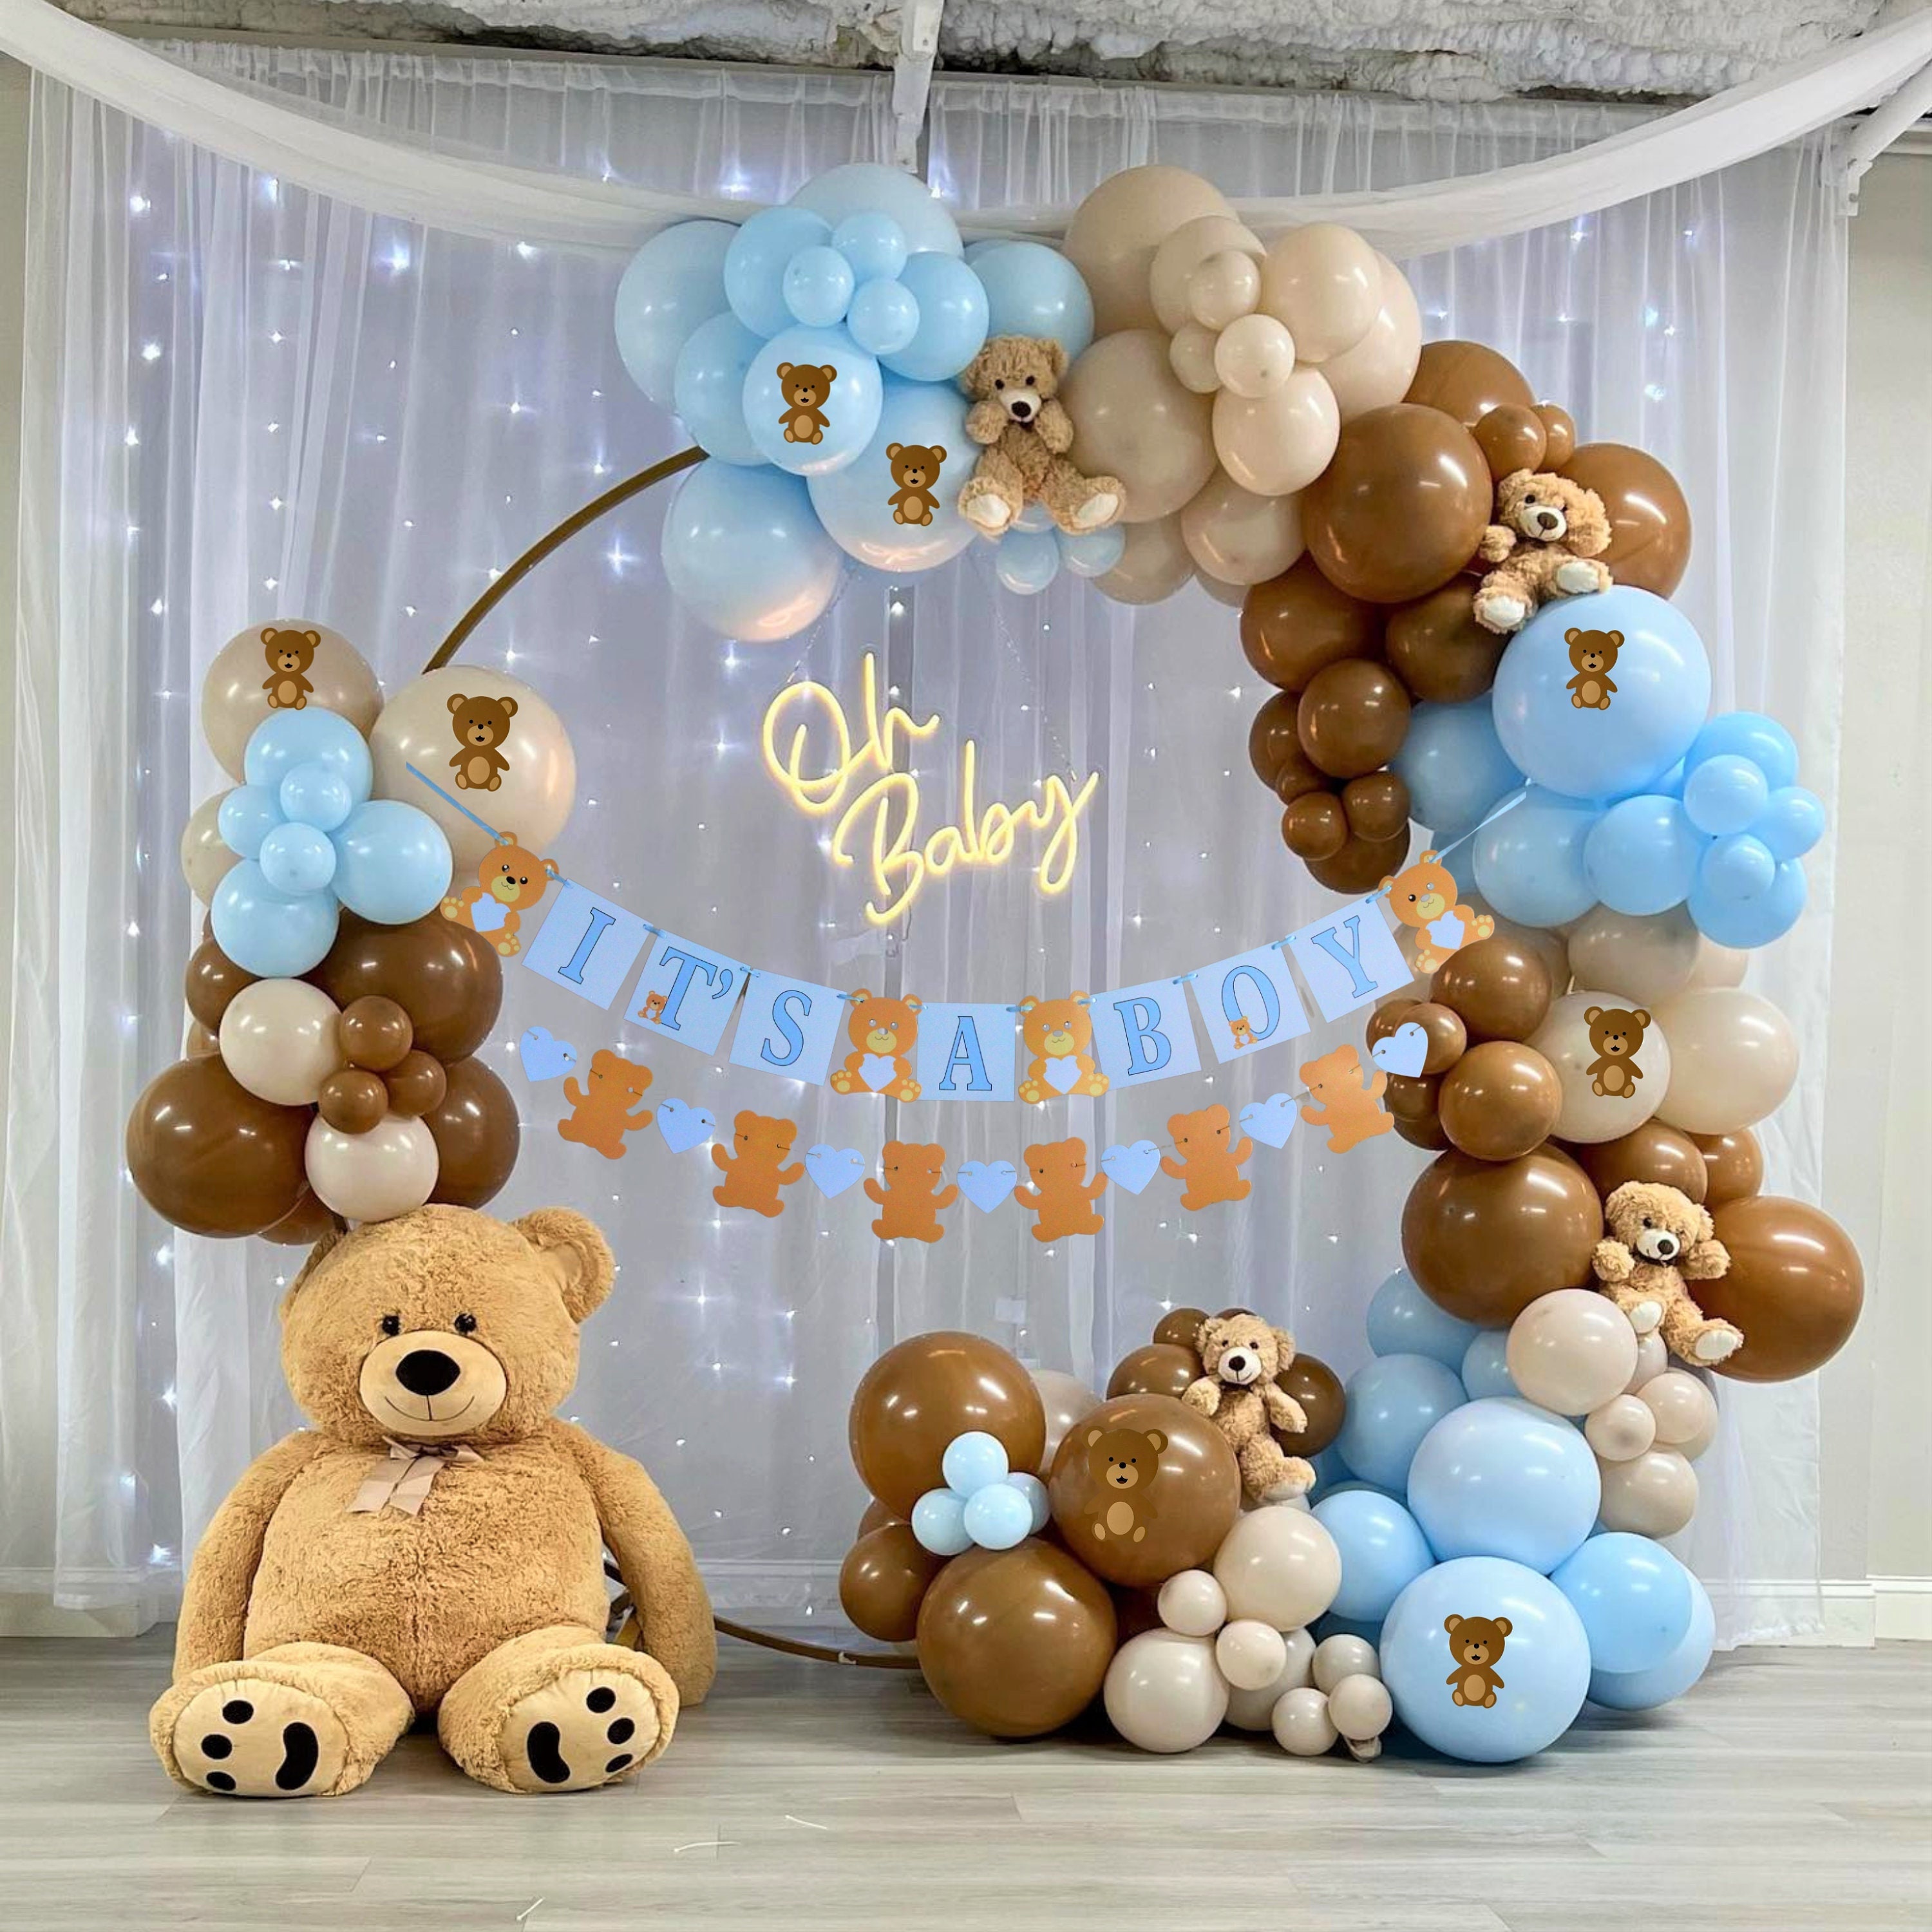 Decoraciones de baby shower de oso de peluche para niño: es un